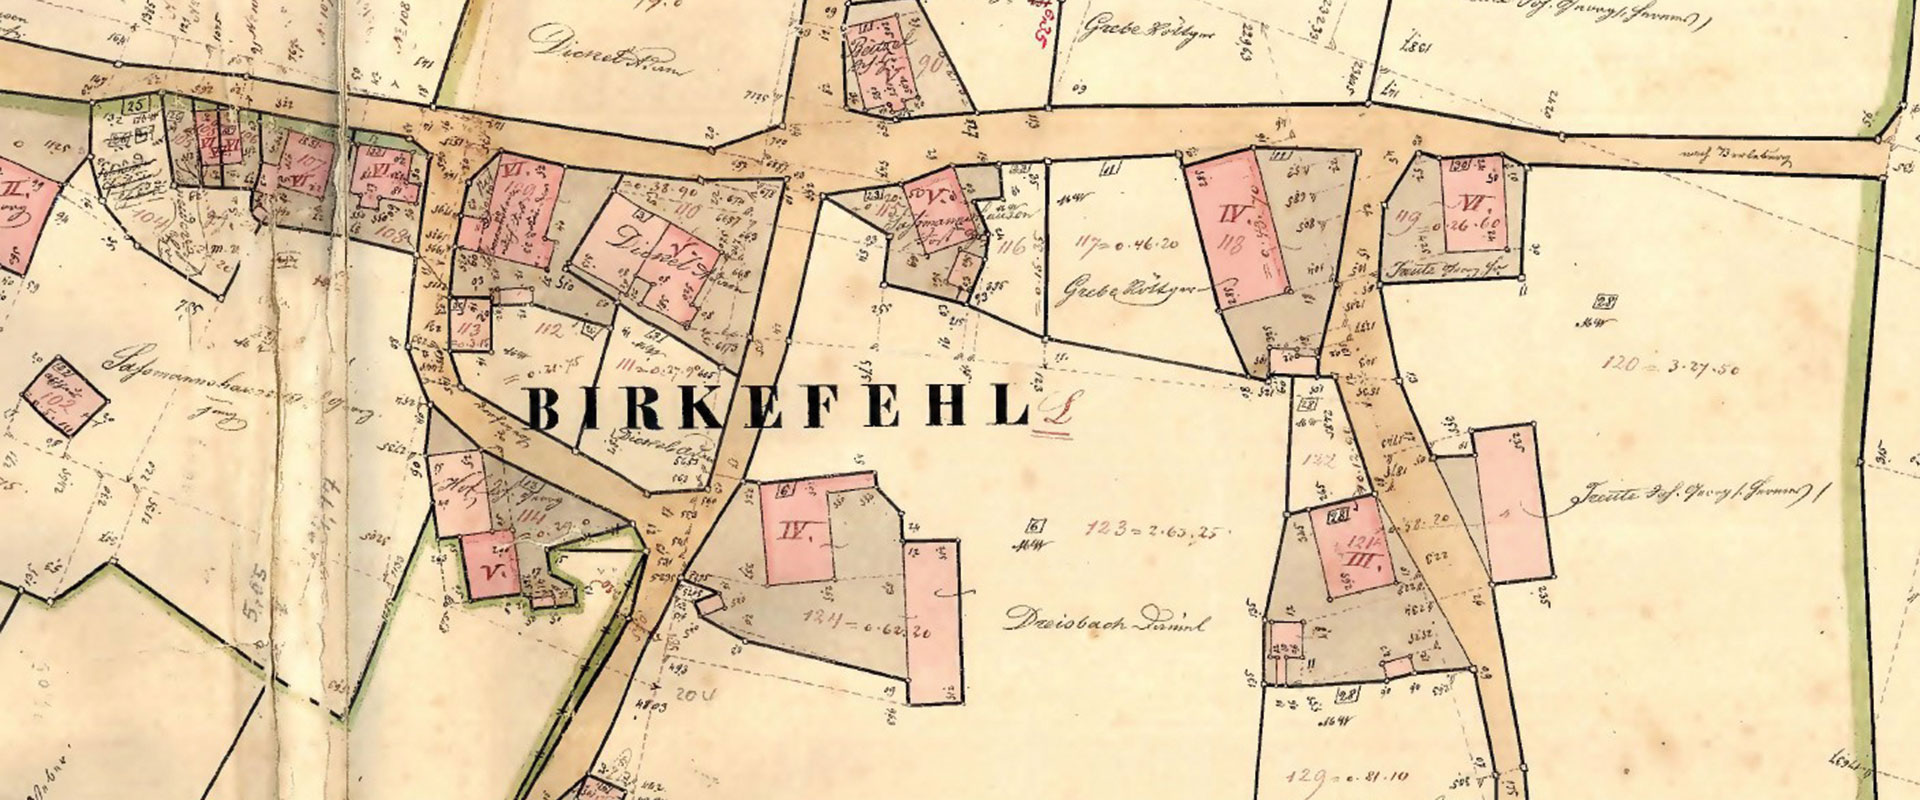 Kulturweg Eisen Siedlung Birkefehl Ortsmitte von Birkefehl Urkataster 1838